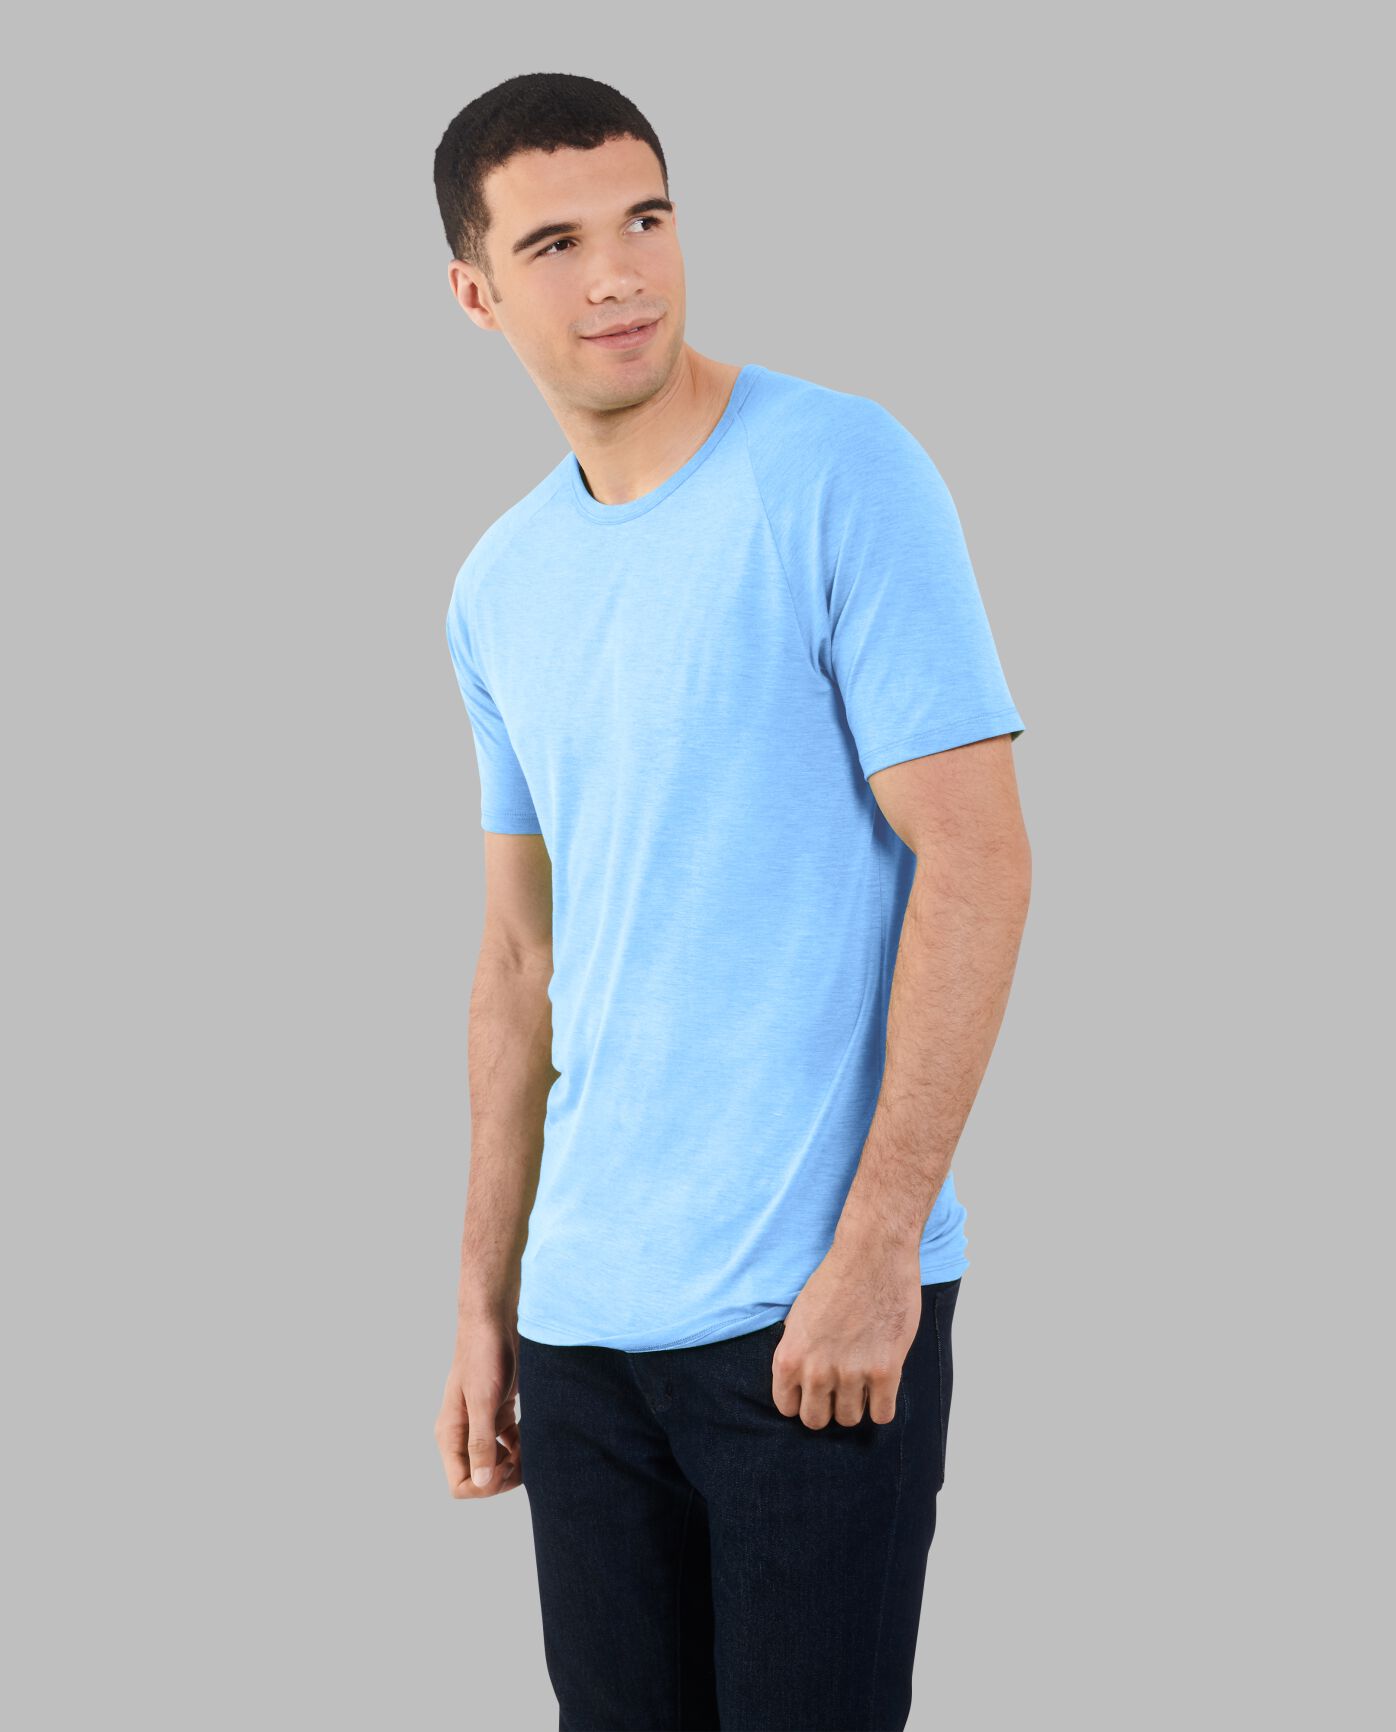 Big Men's EverLight™ Short Sleeve Raglan T-Shirt, 2XL, 2 Pack Cloud Blue Heather